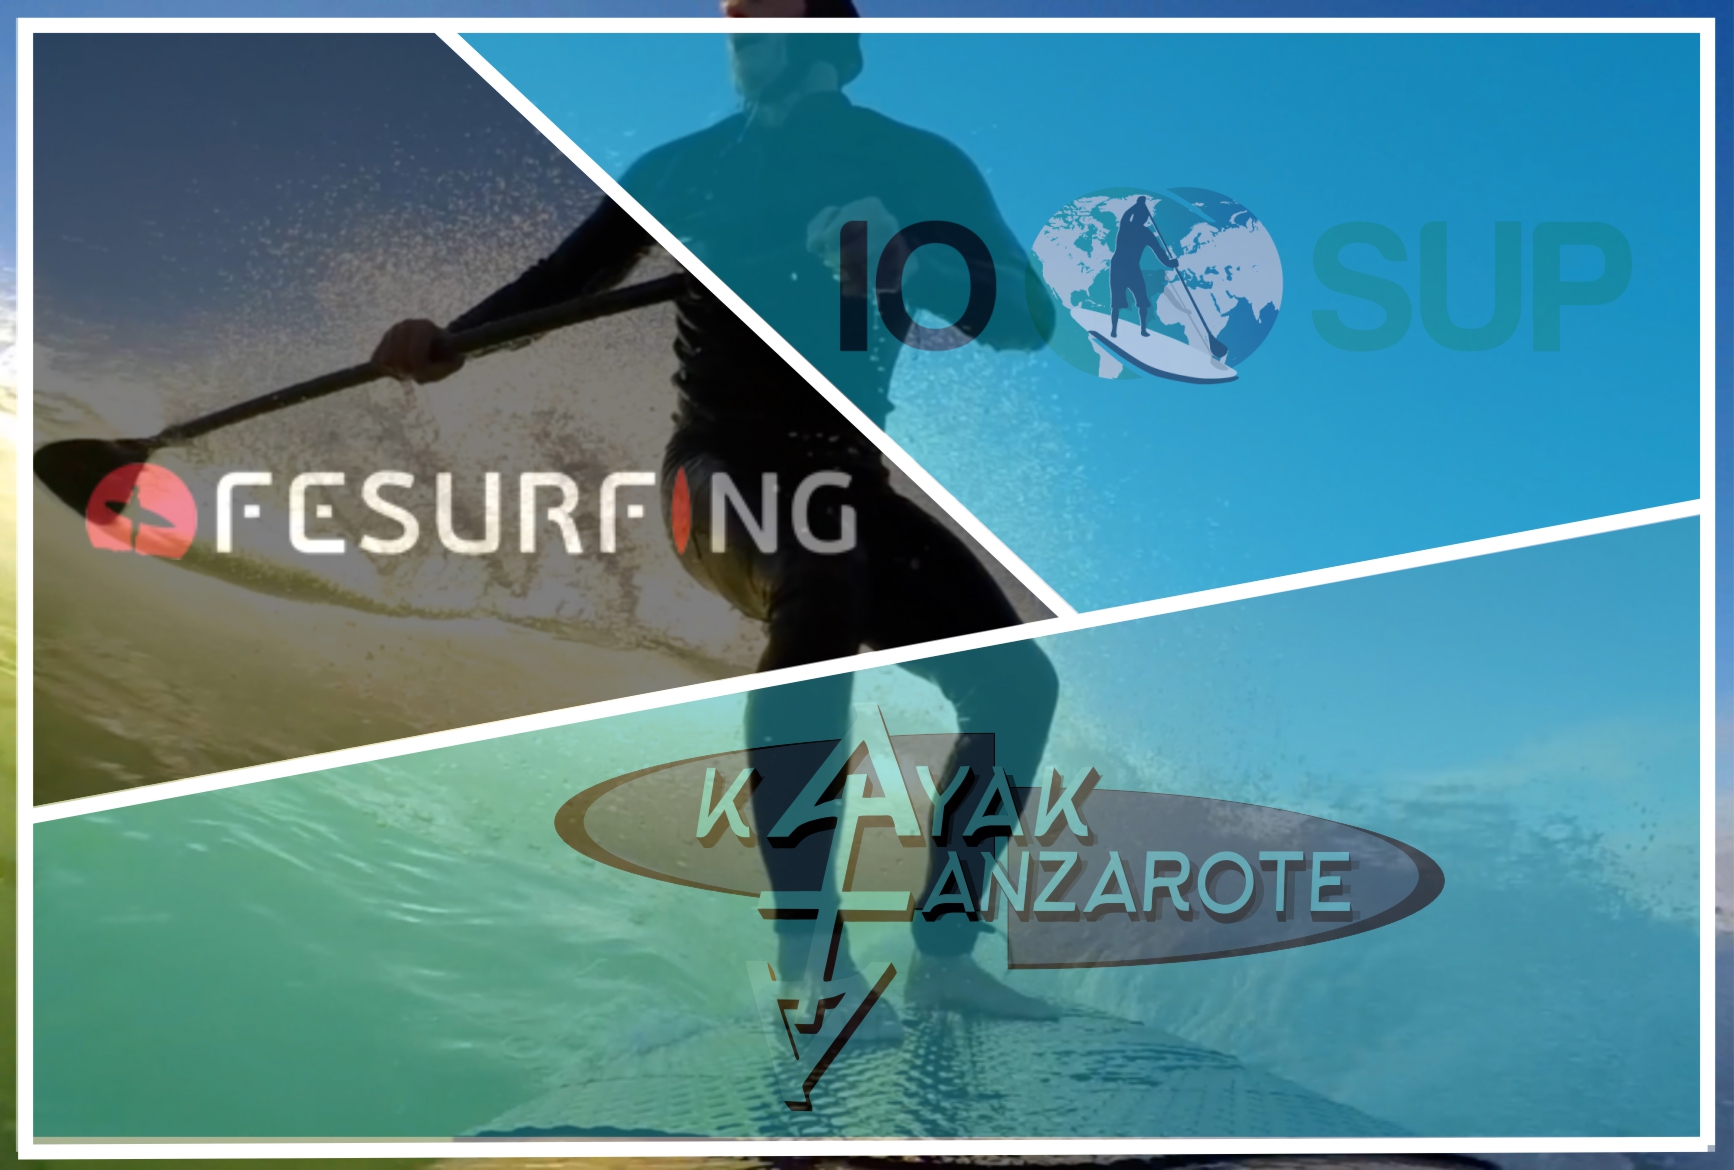 Image logos Kayaklanzarote, Iosup and fesurf